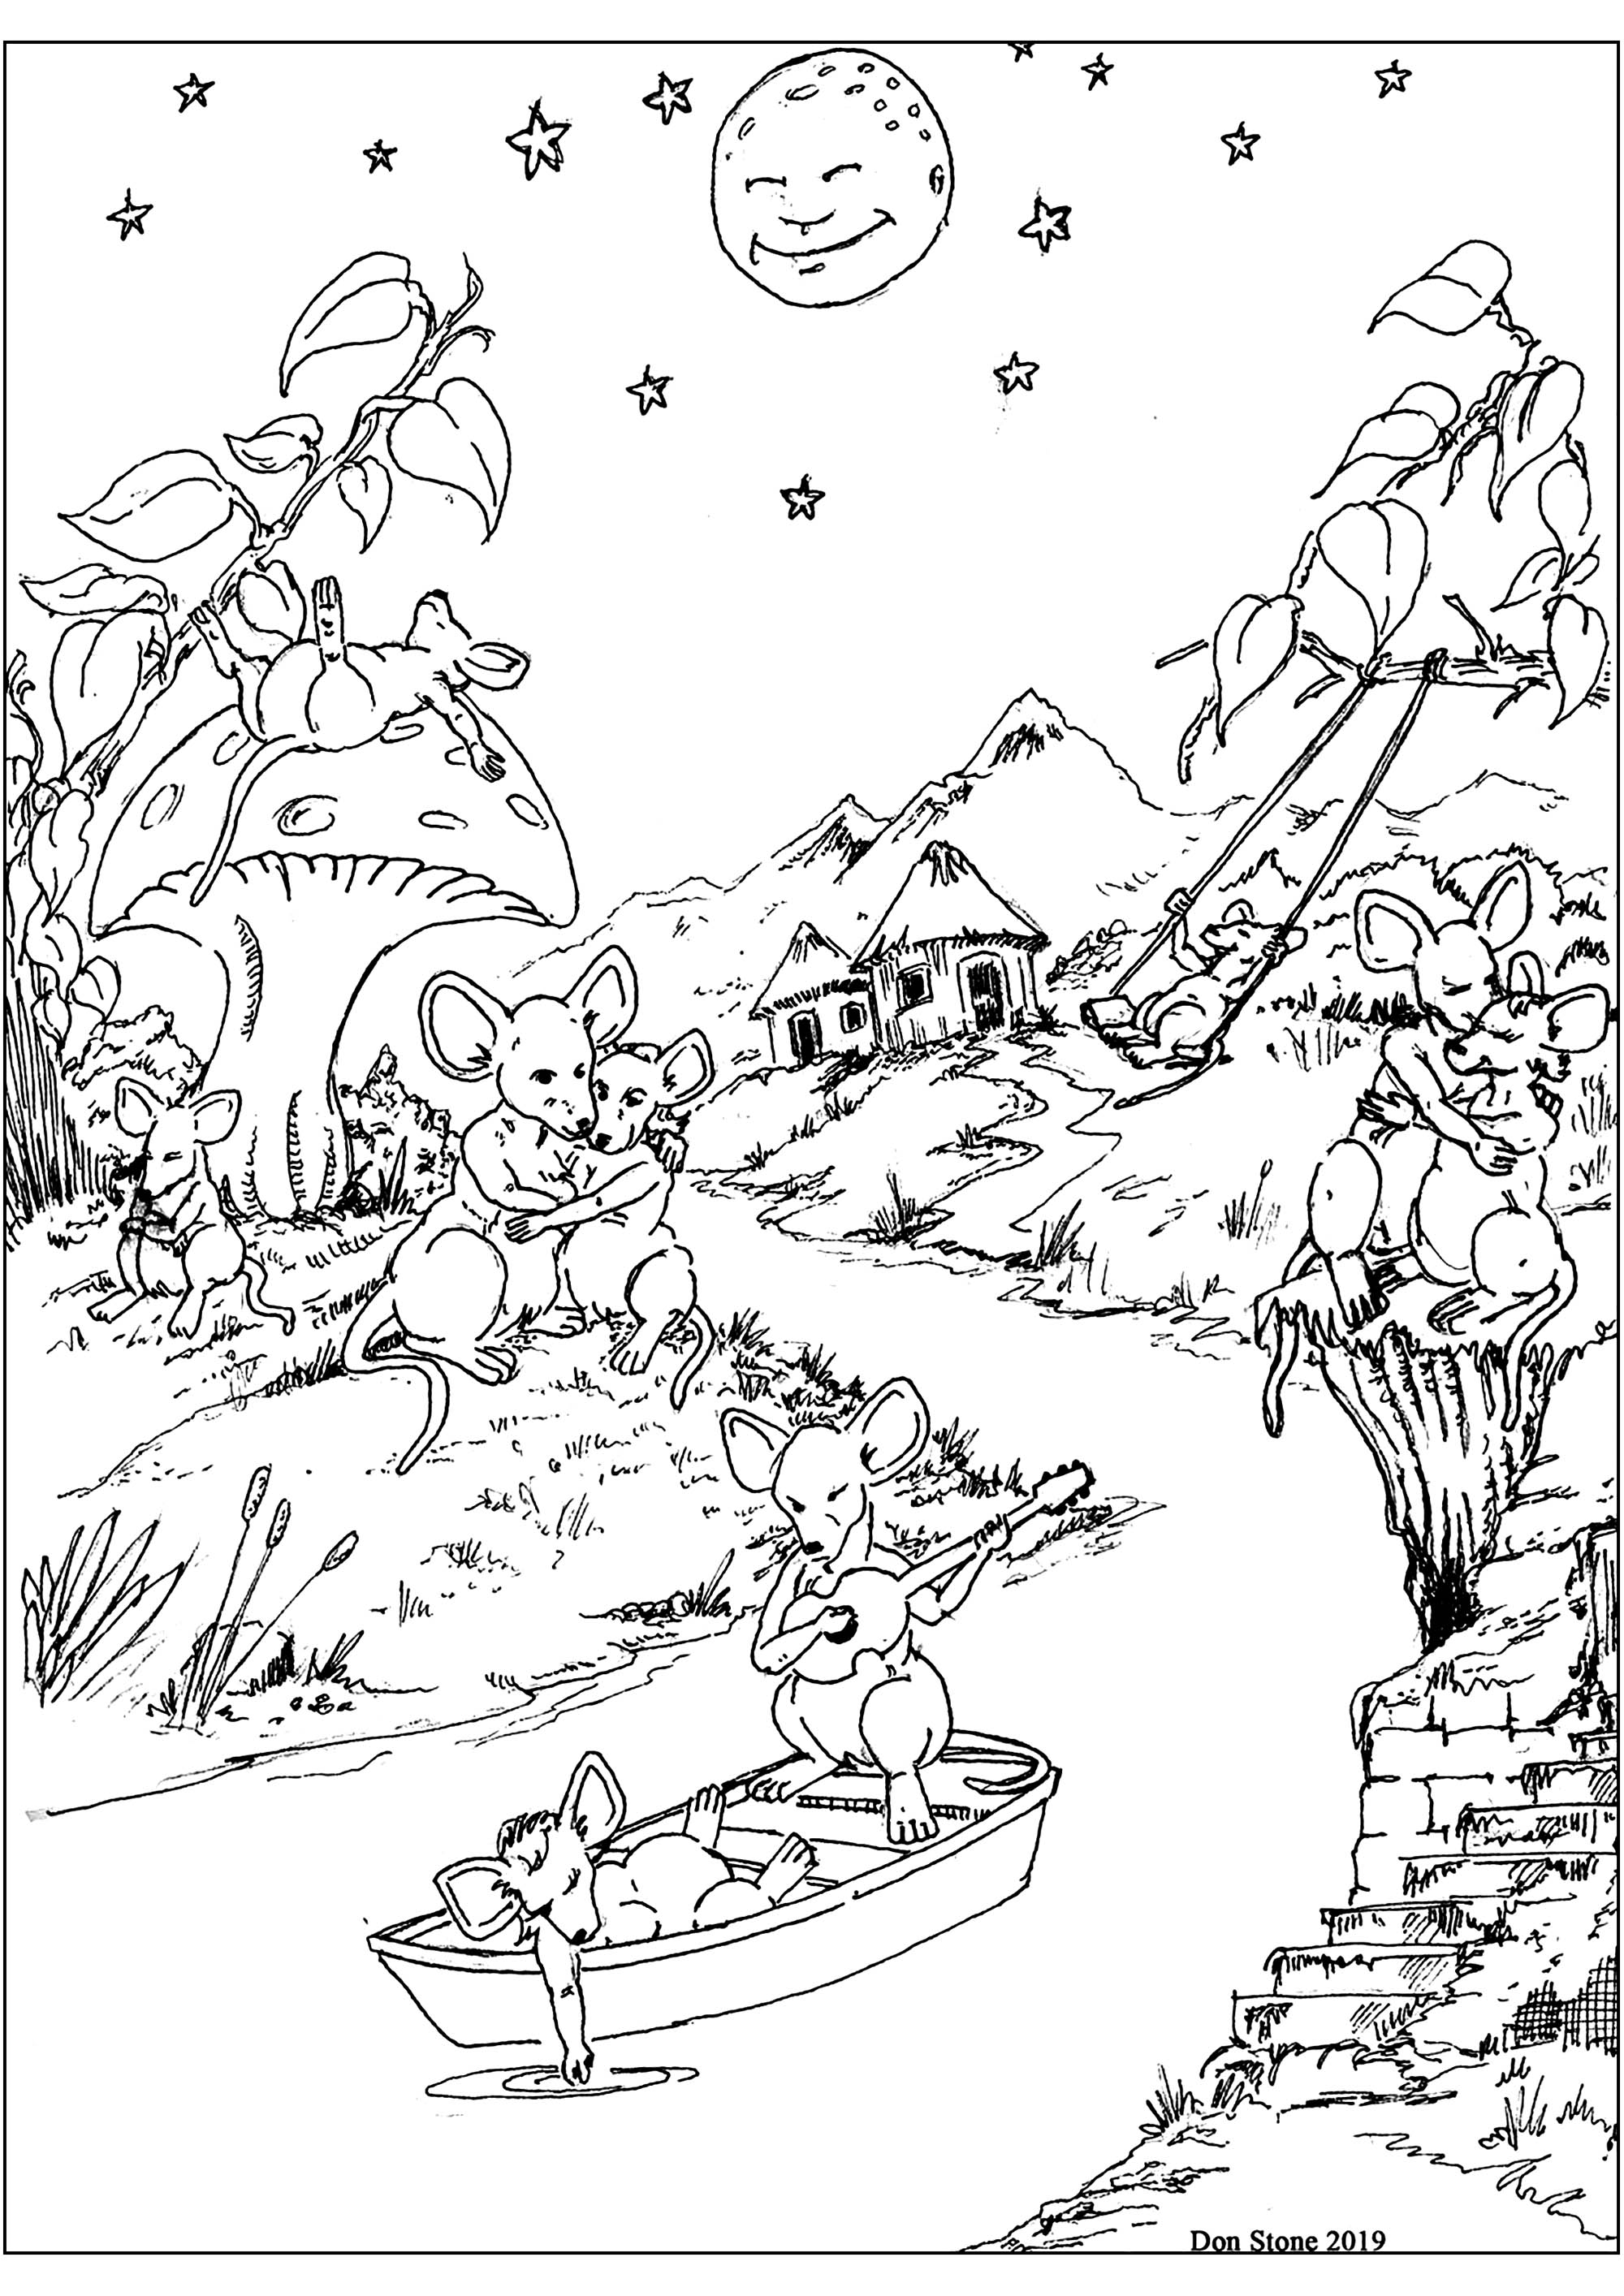 Dessin original représentant une jolie rivière au clair de lune avec des souris dans un bateau, sur les berges, et sur un champignon